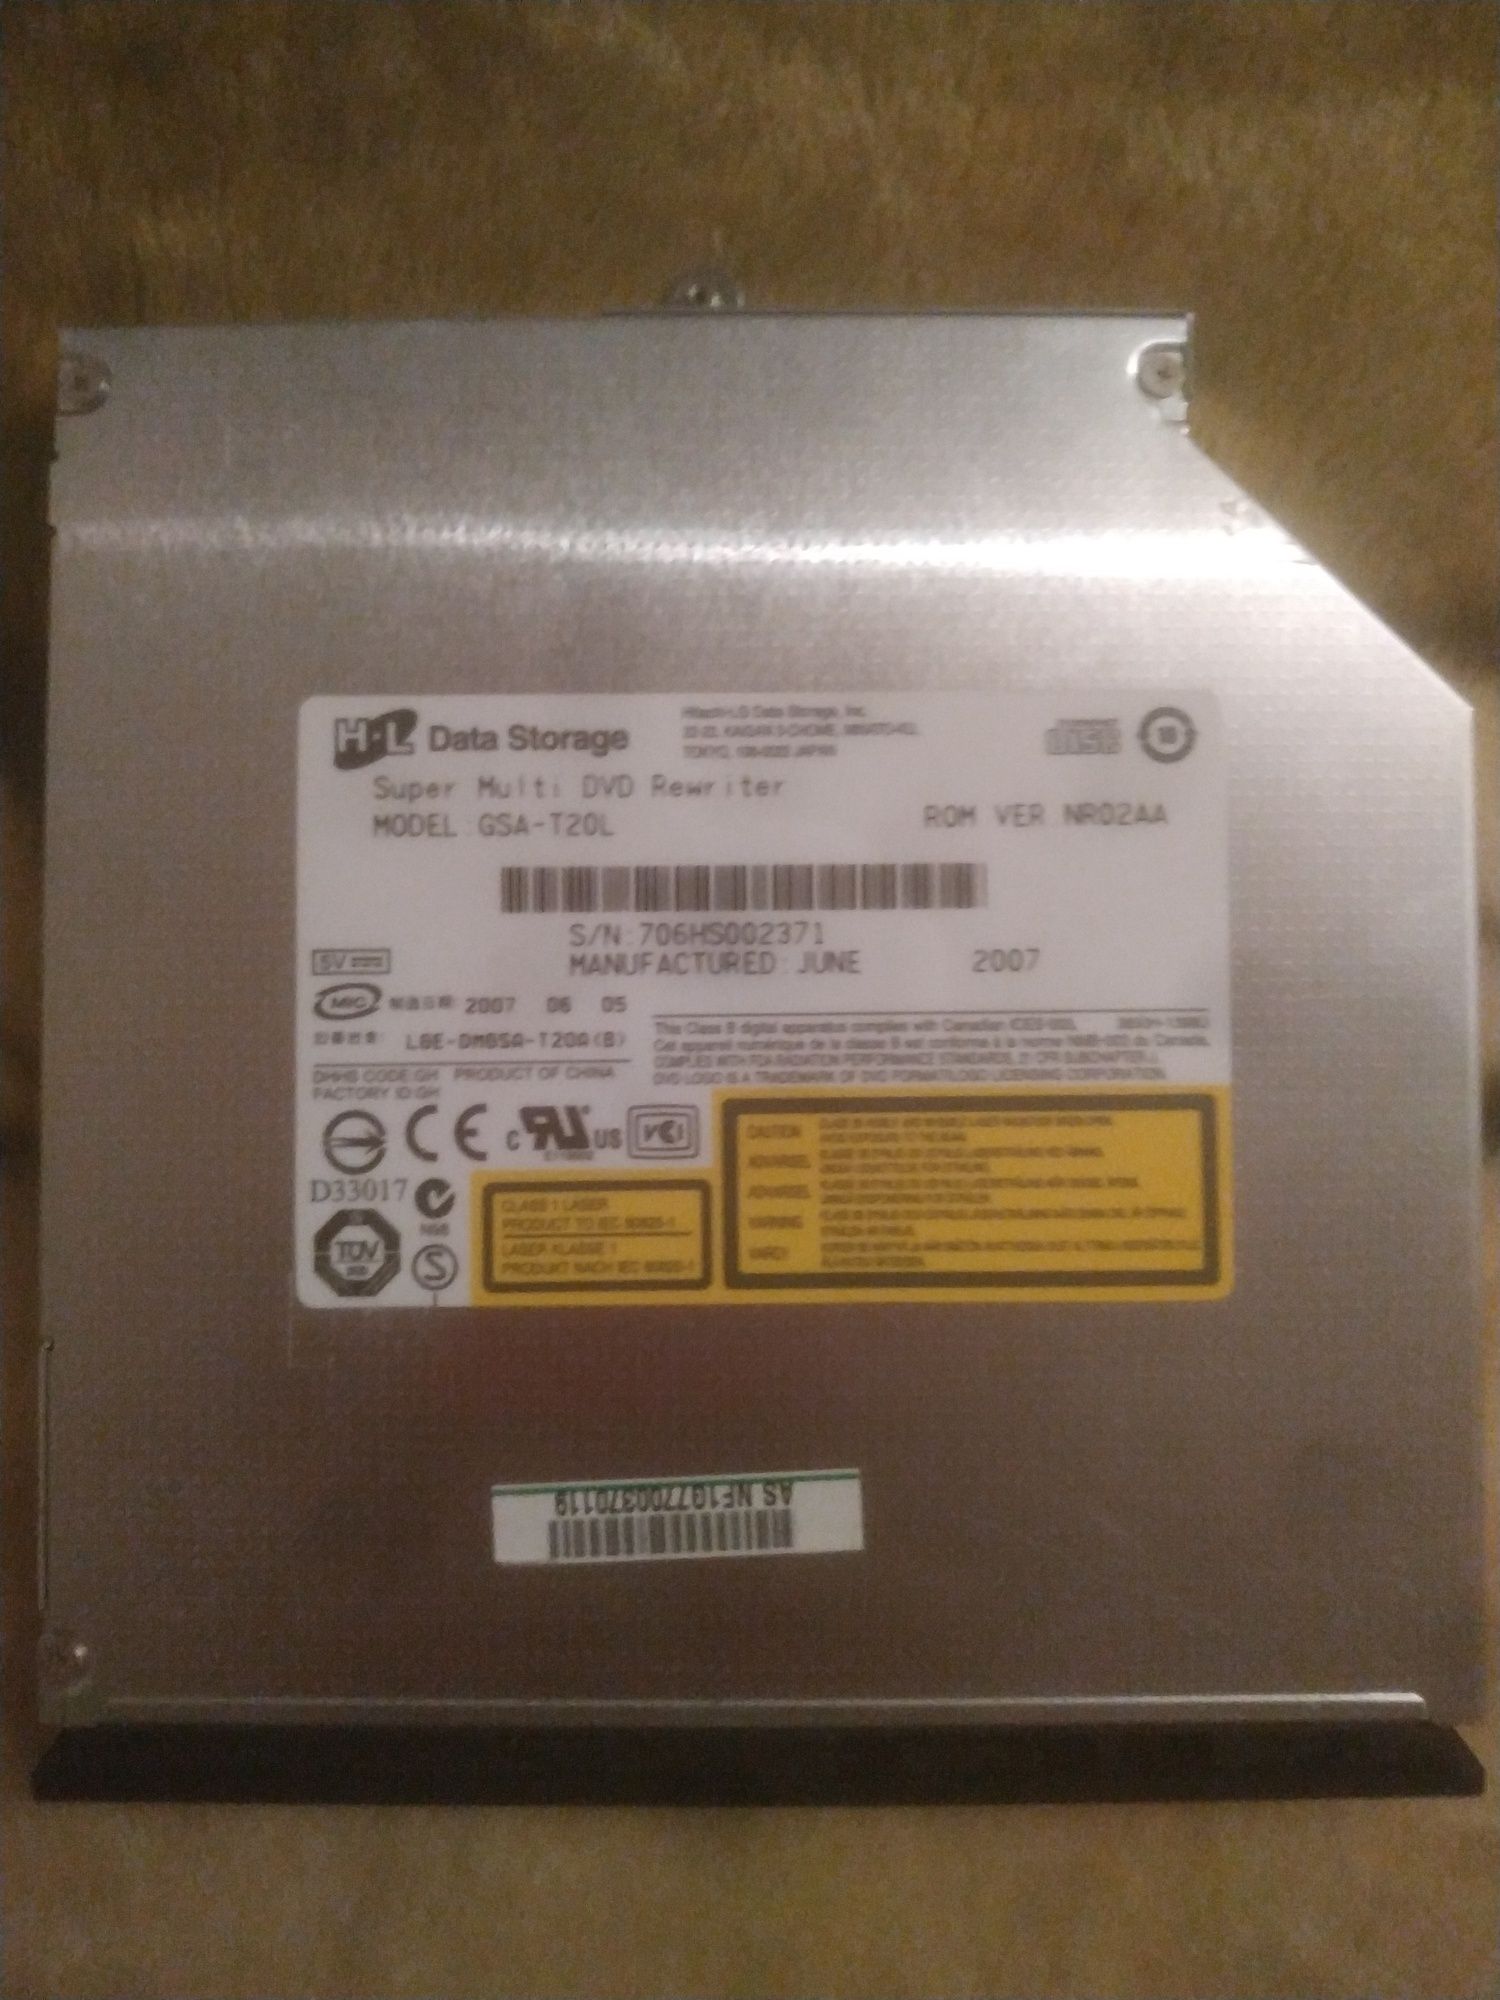 /DVD привід для ноутбука Asus X61SL-6X038C, LGE-DMGSA-T52D, Б/В